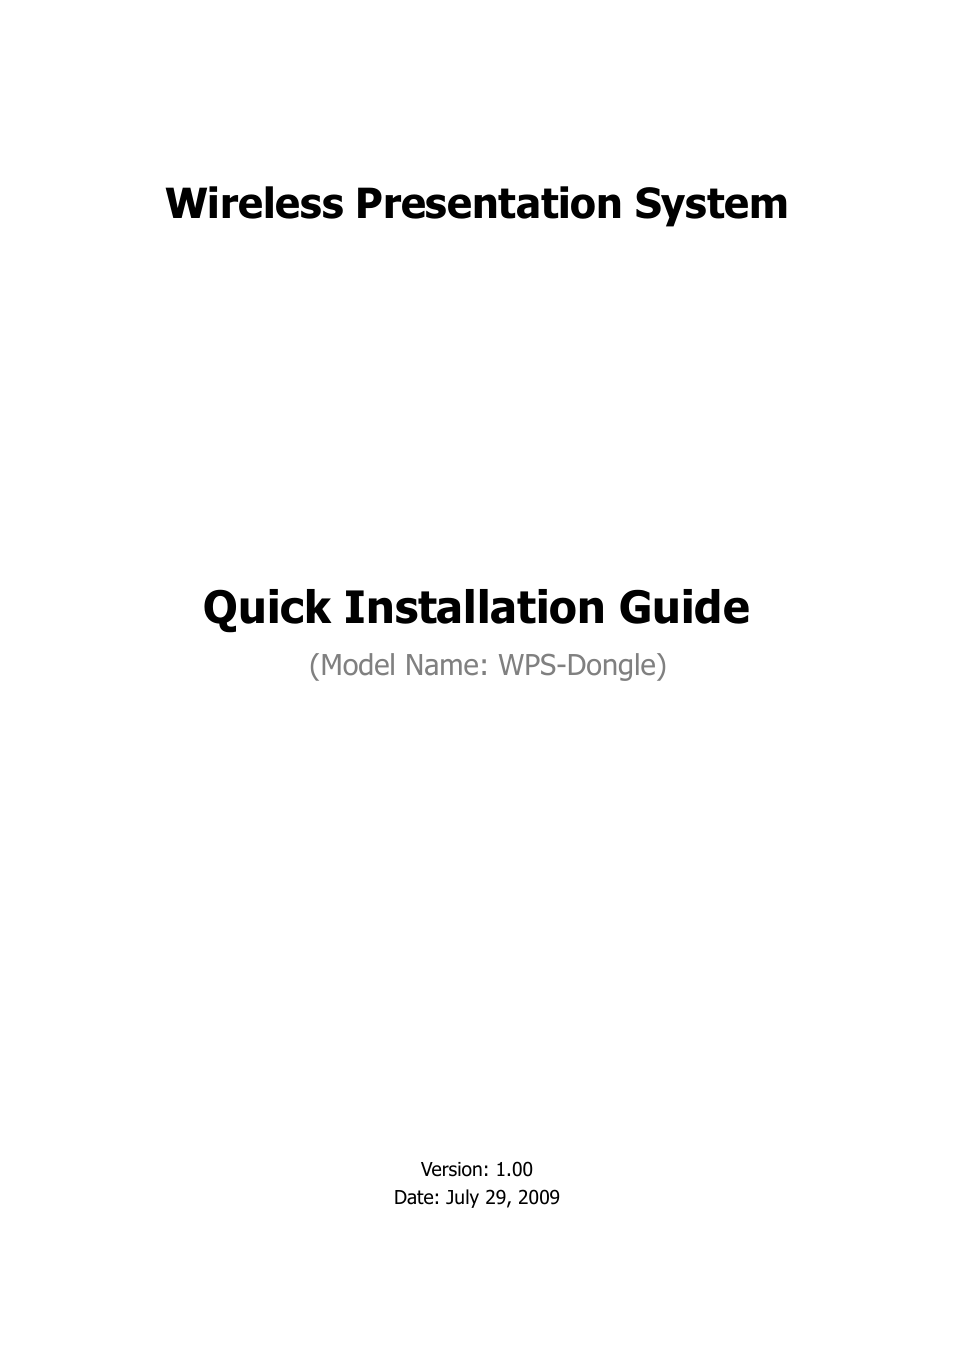 WIGA / WGA-110 Quick Install Guide